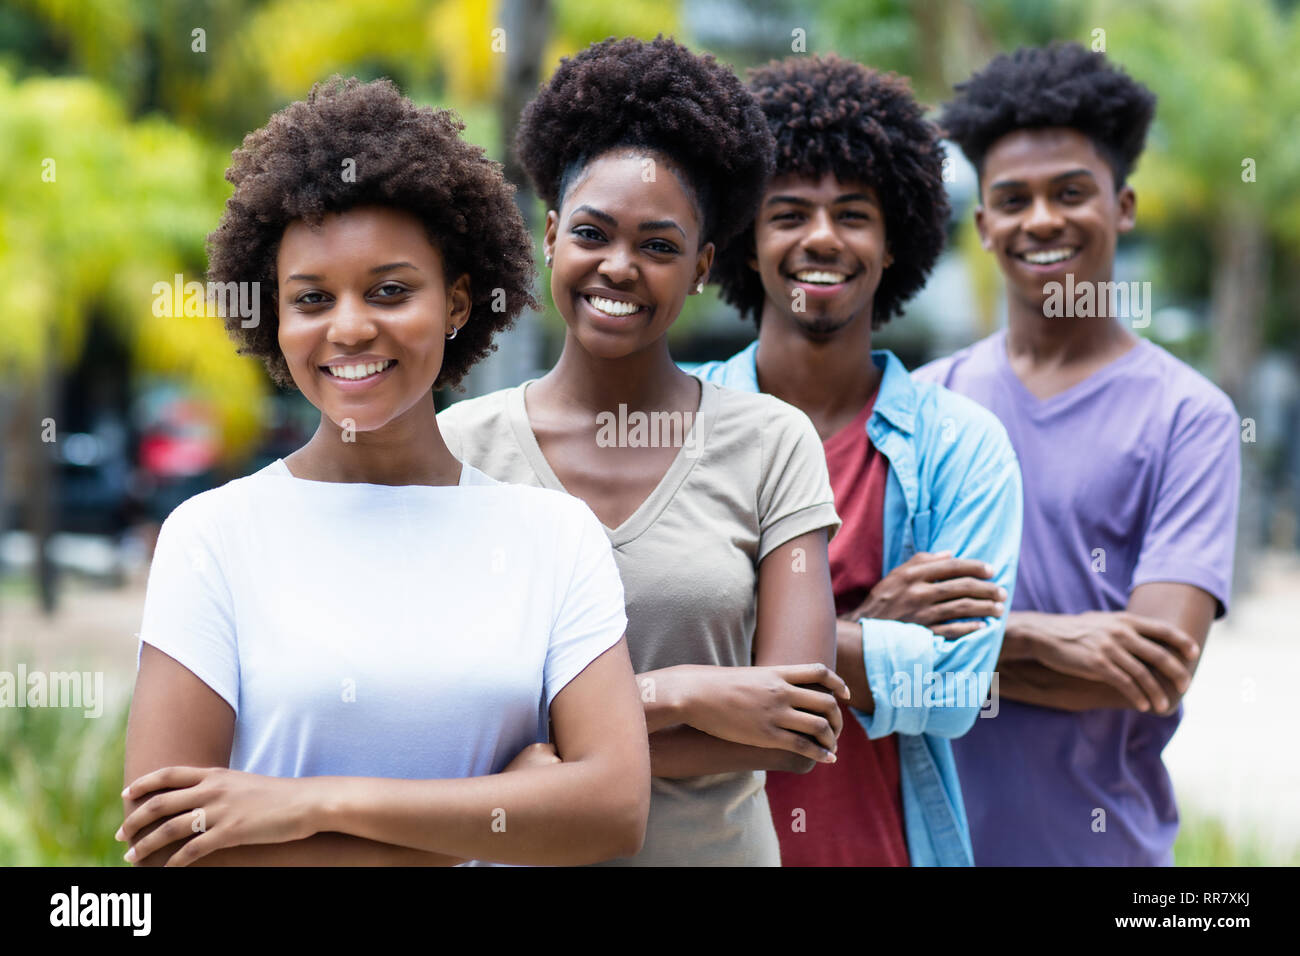 Groupe de jeunes afro-américains les femmes et les hommes dans la ligne de l'été en plein air Banque D'Images